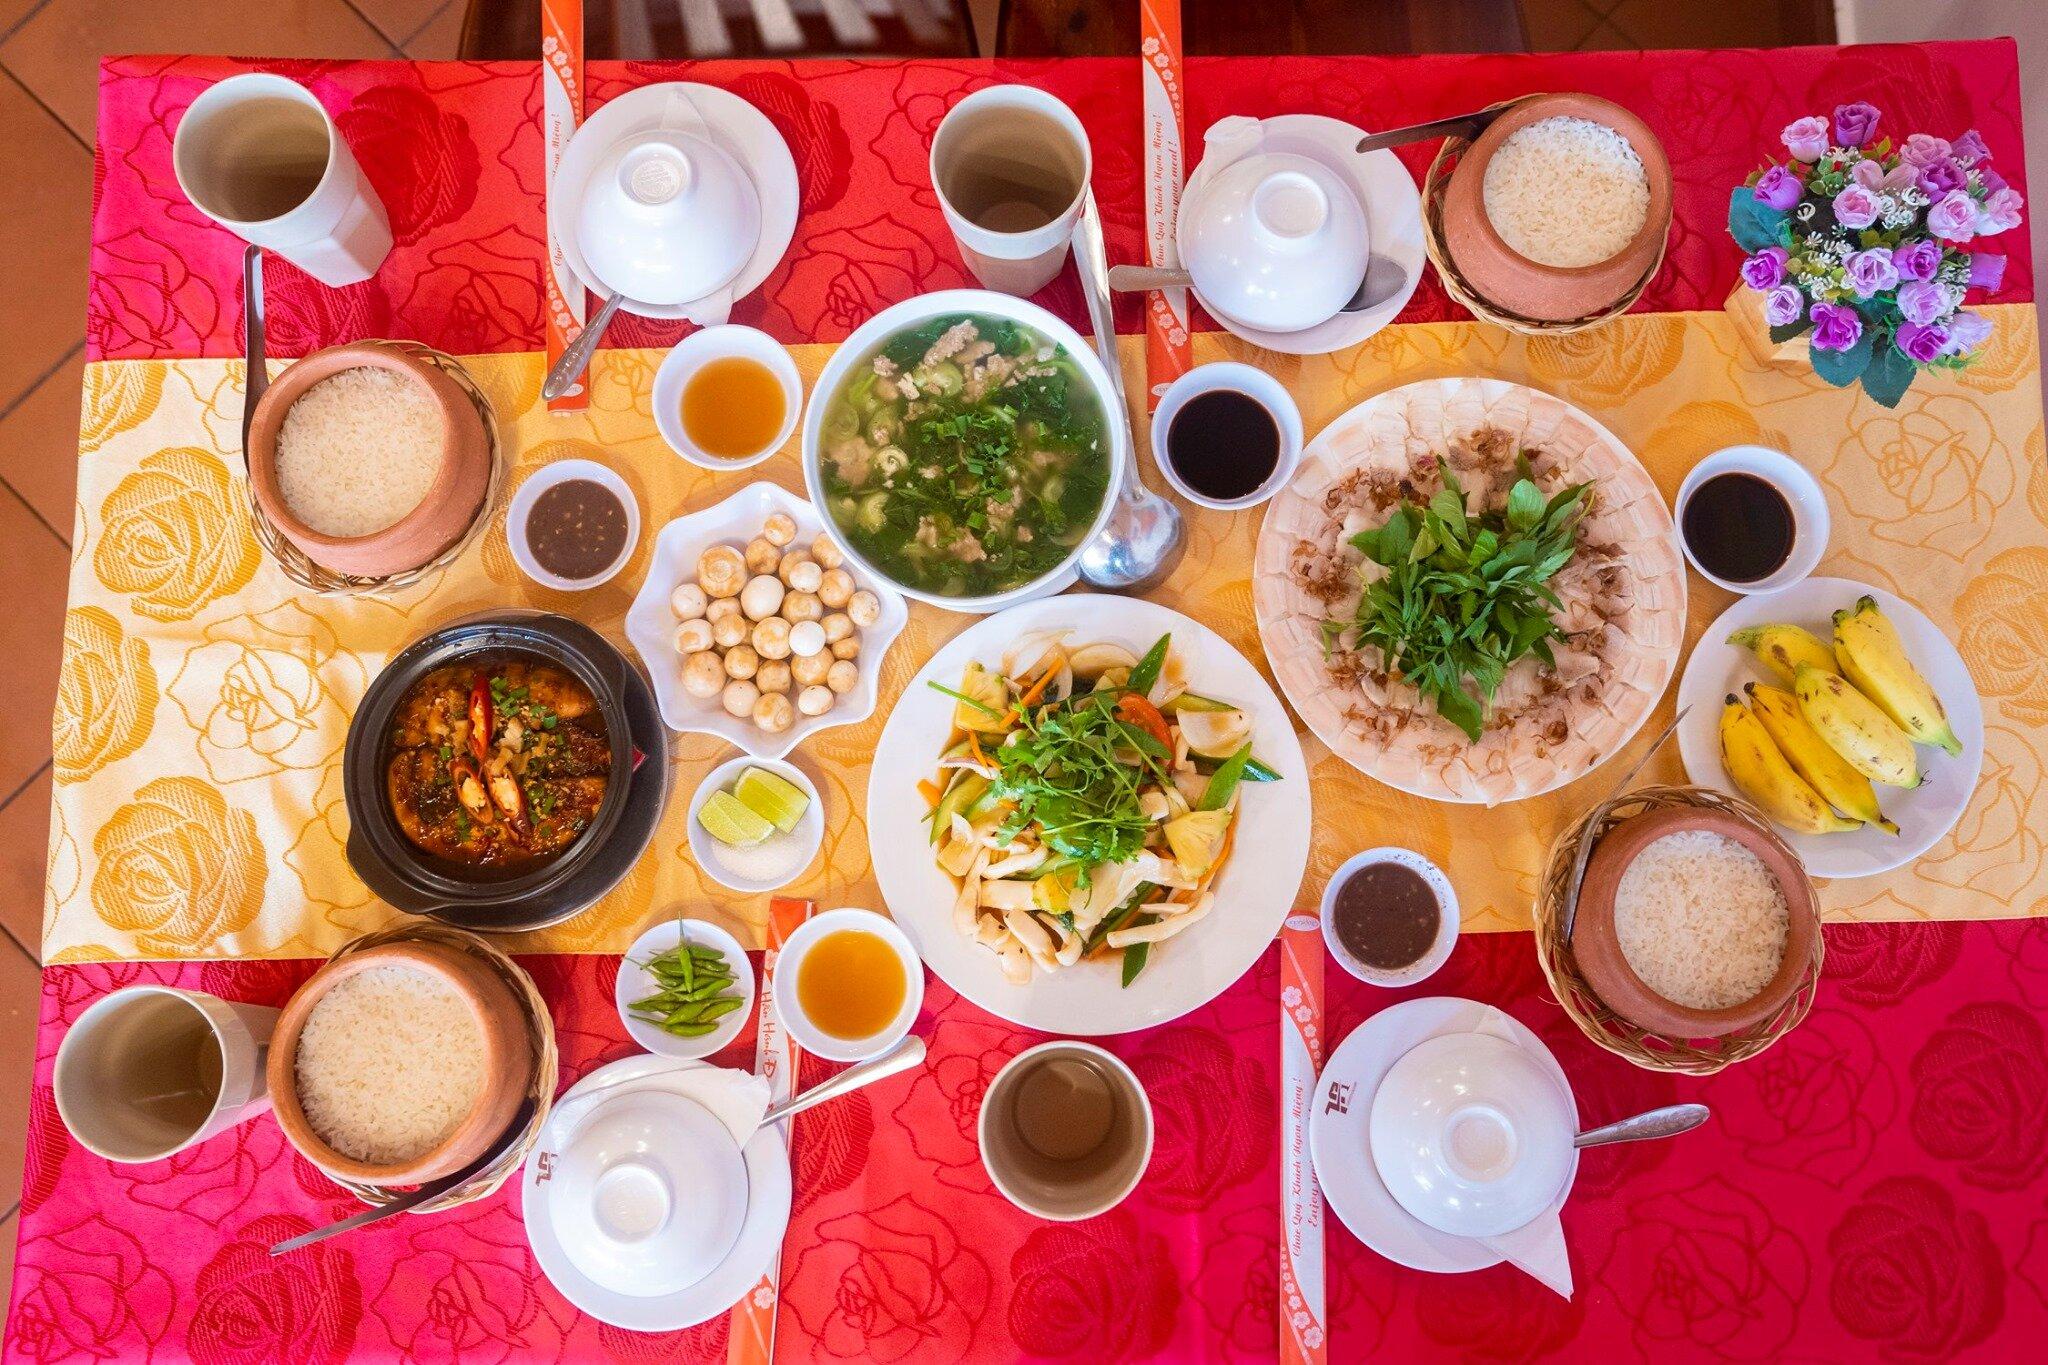 15 quán ăn ngon ở Bình Thuận bạn nhất định phải thử! ăn ngon ăn vặt bánh canh bình dân bình thuận cơm tấm hải sản Mũi Né nhà hàng Phan Thiết quán ăn quán ăn ngon quán ăn ngon ở bình thuận quán nhậu thông tin